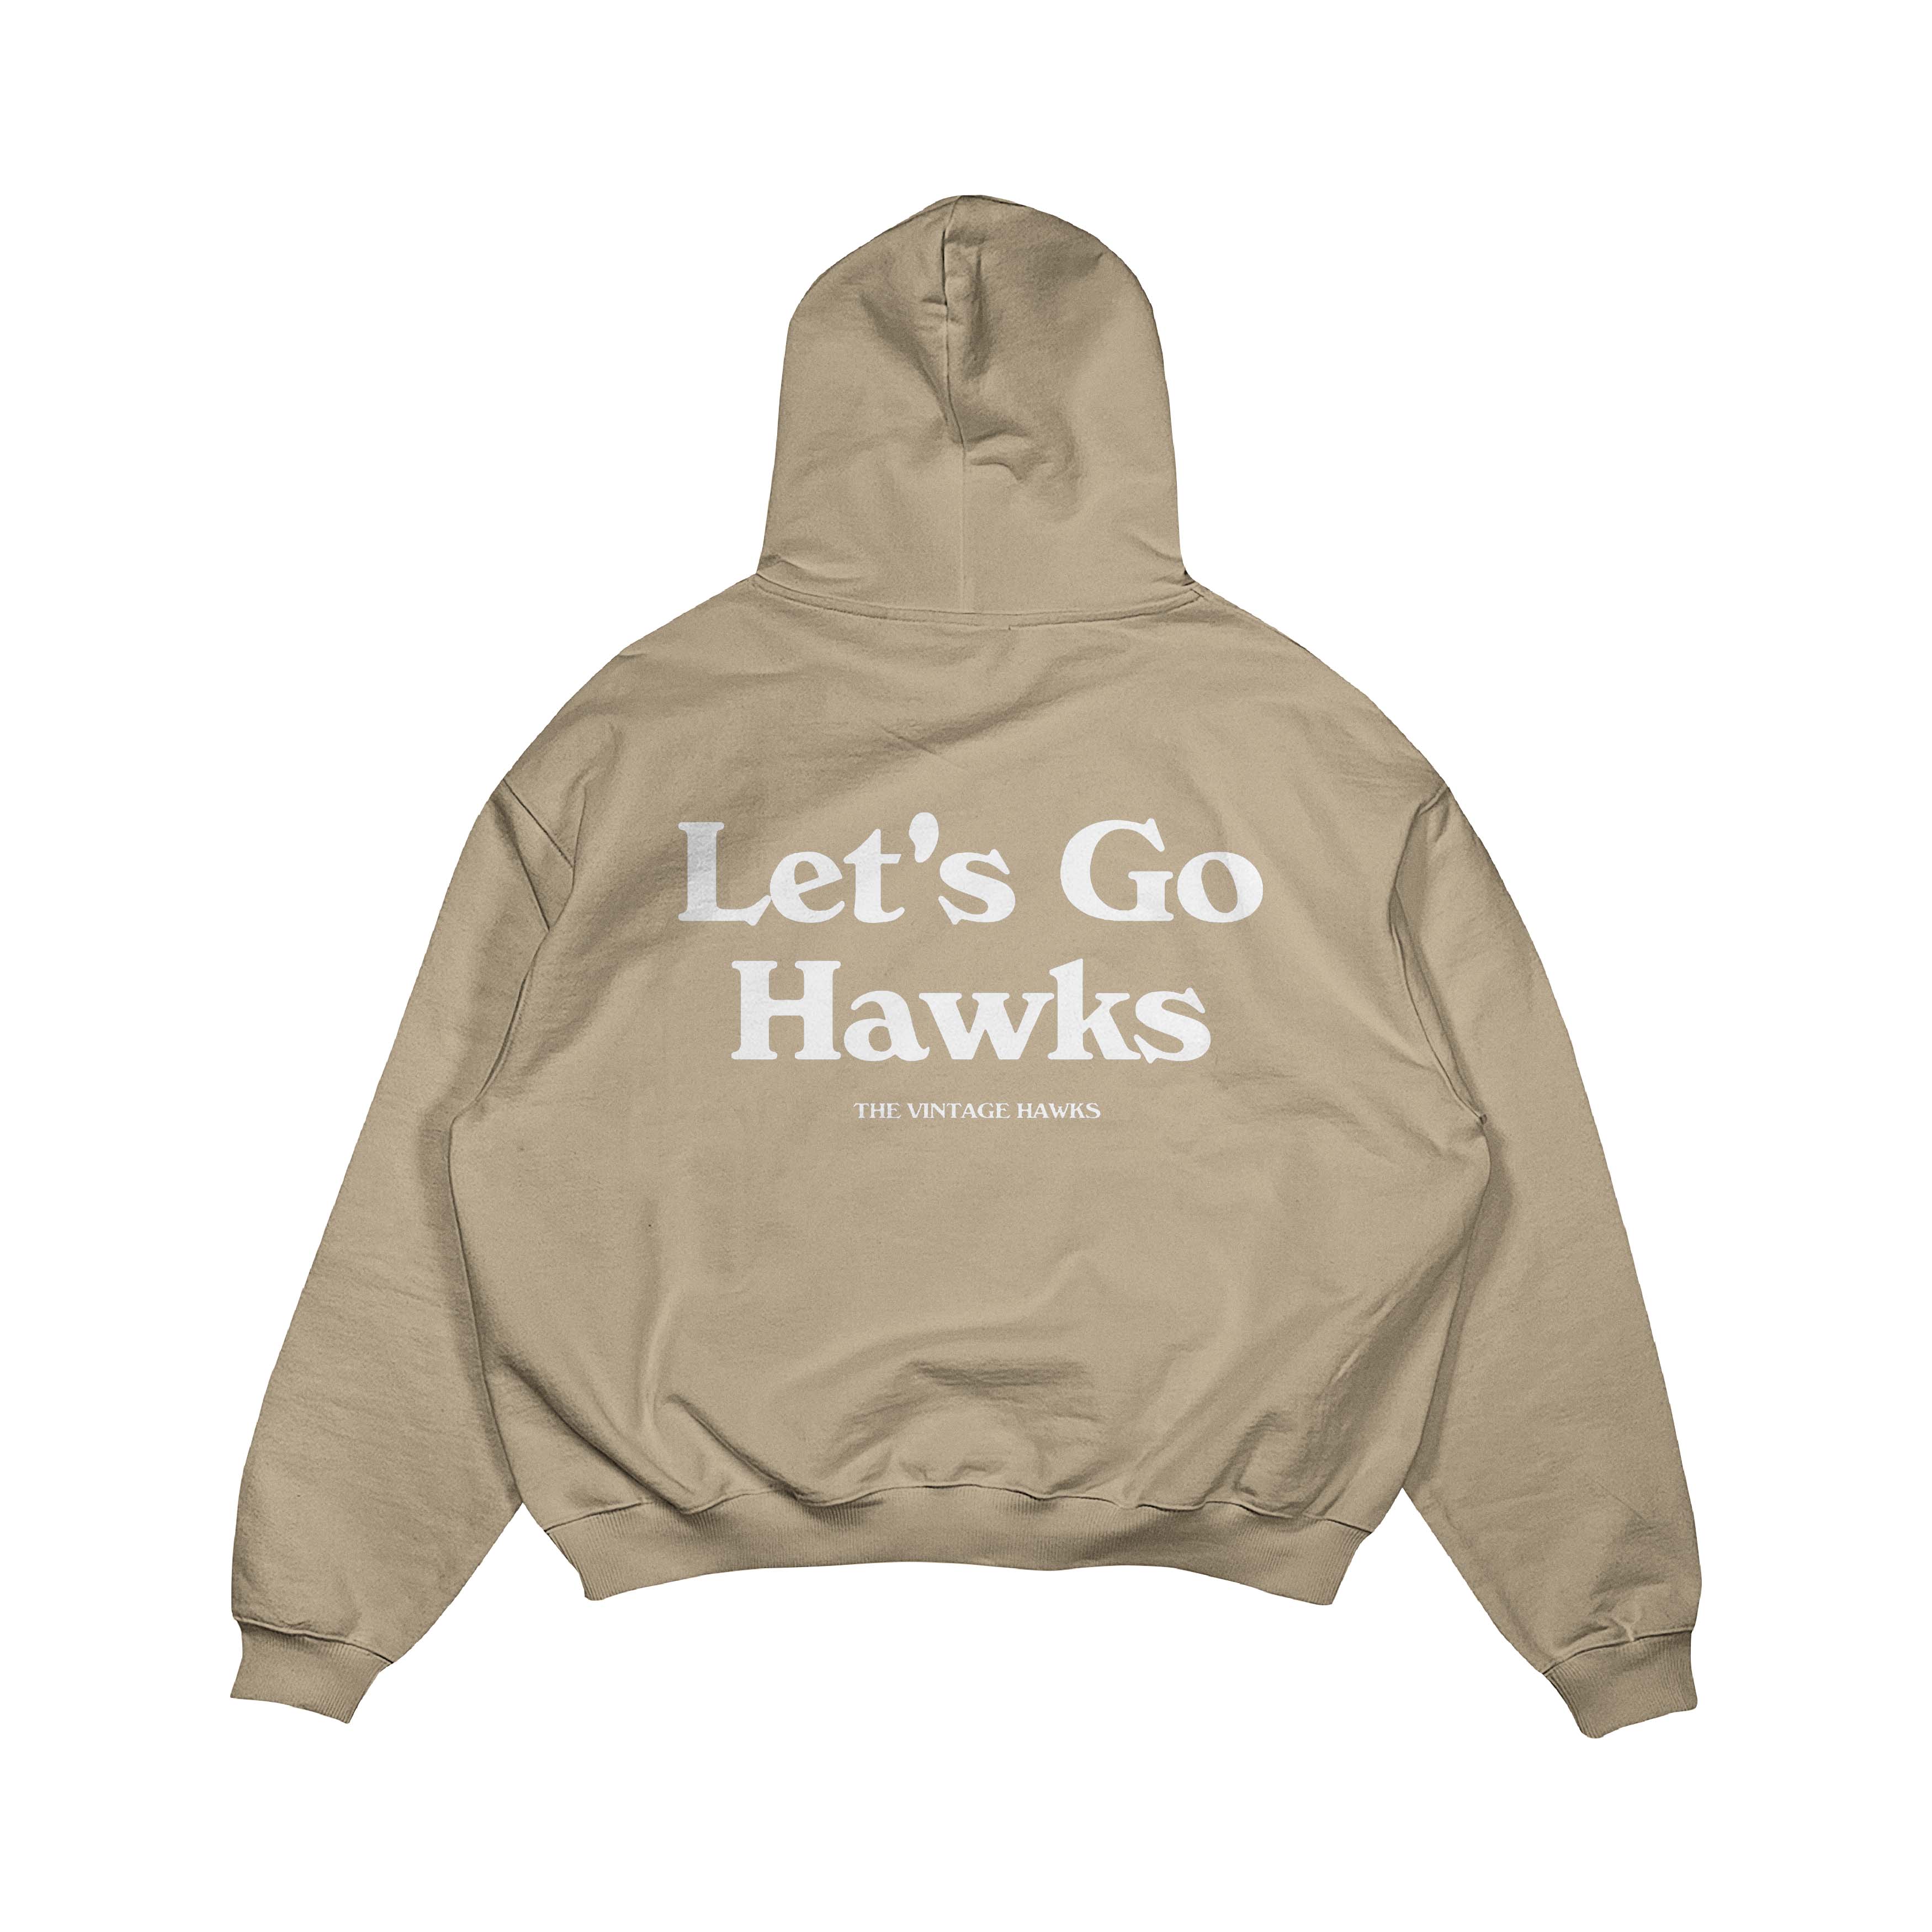 Let's Go Hawks Hoodie - Tan